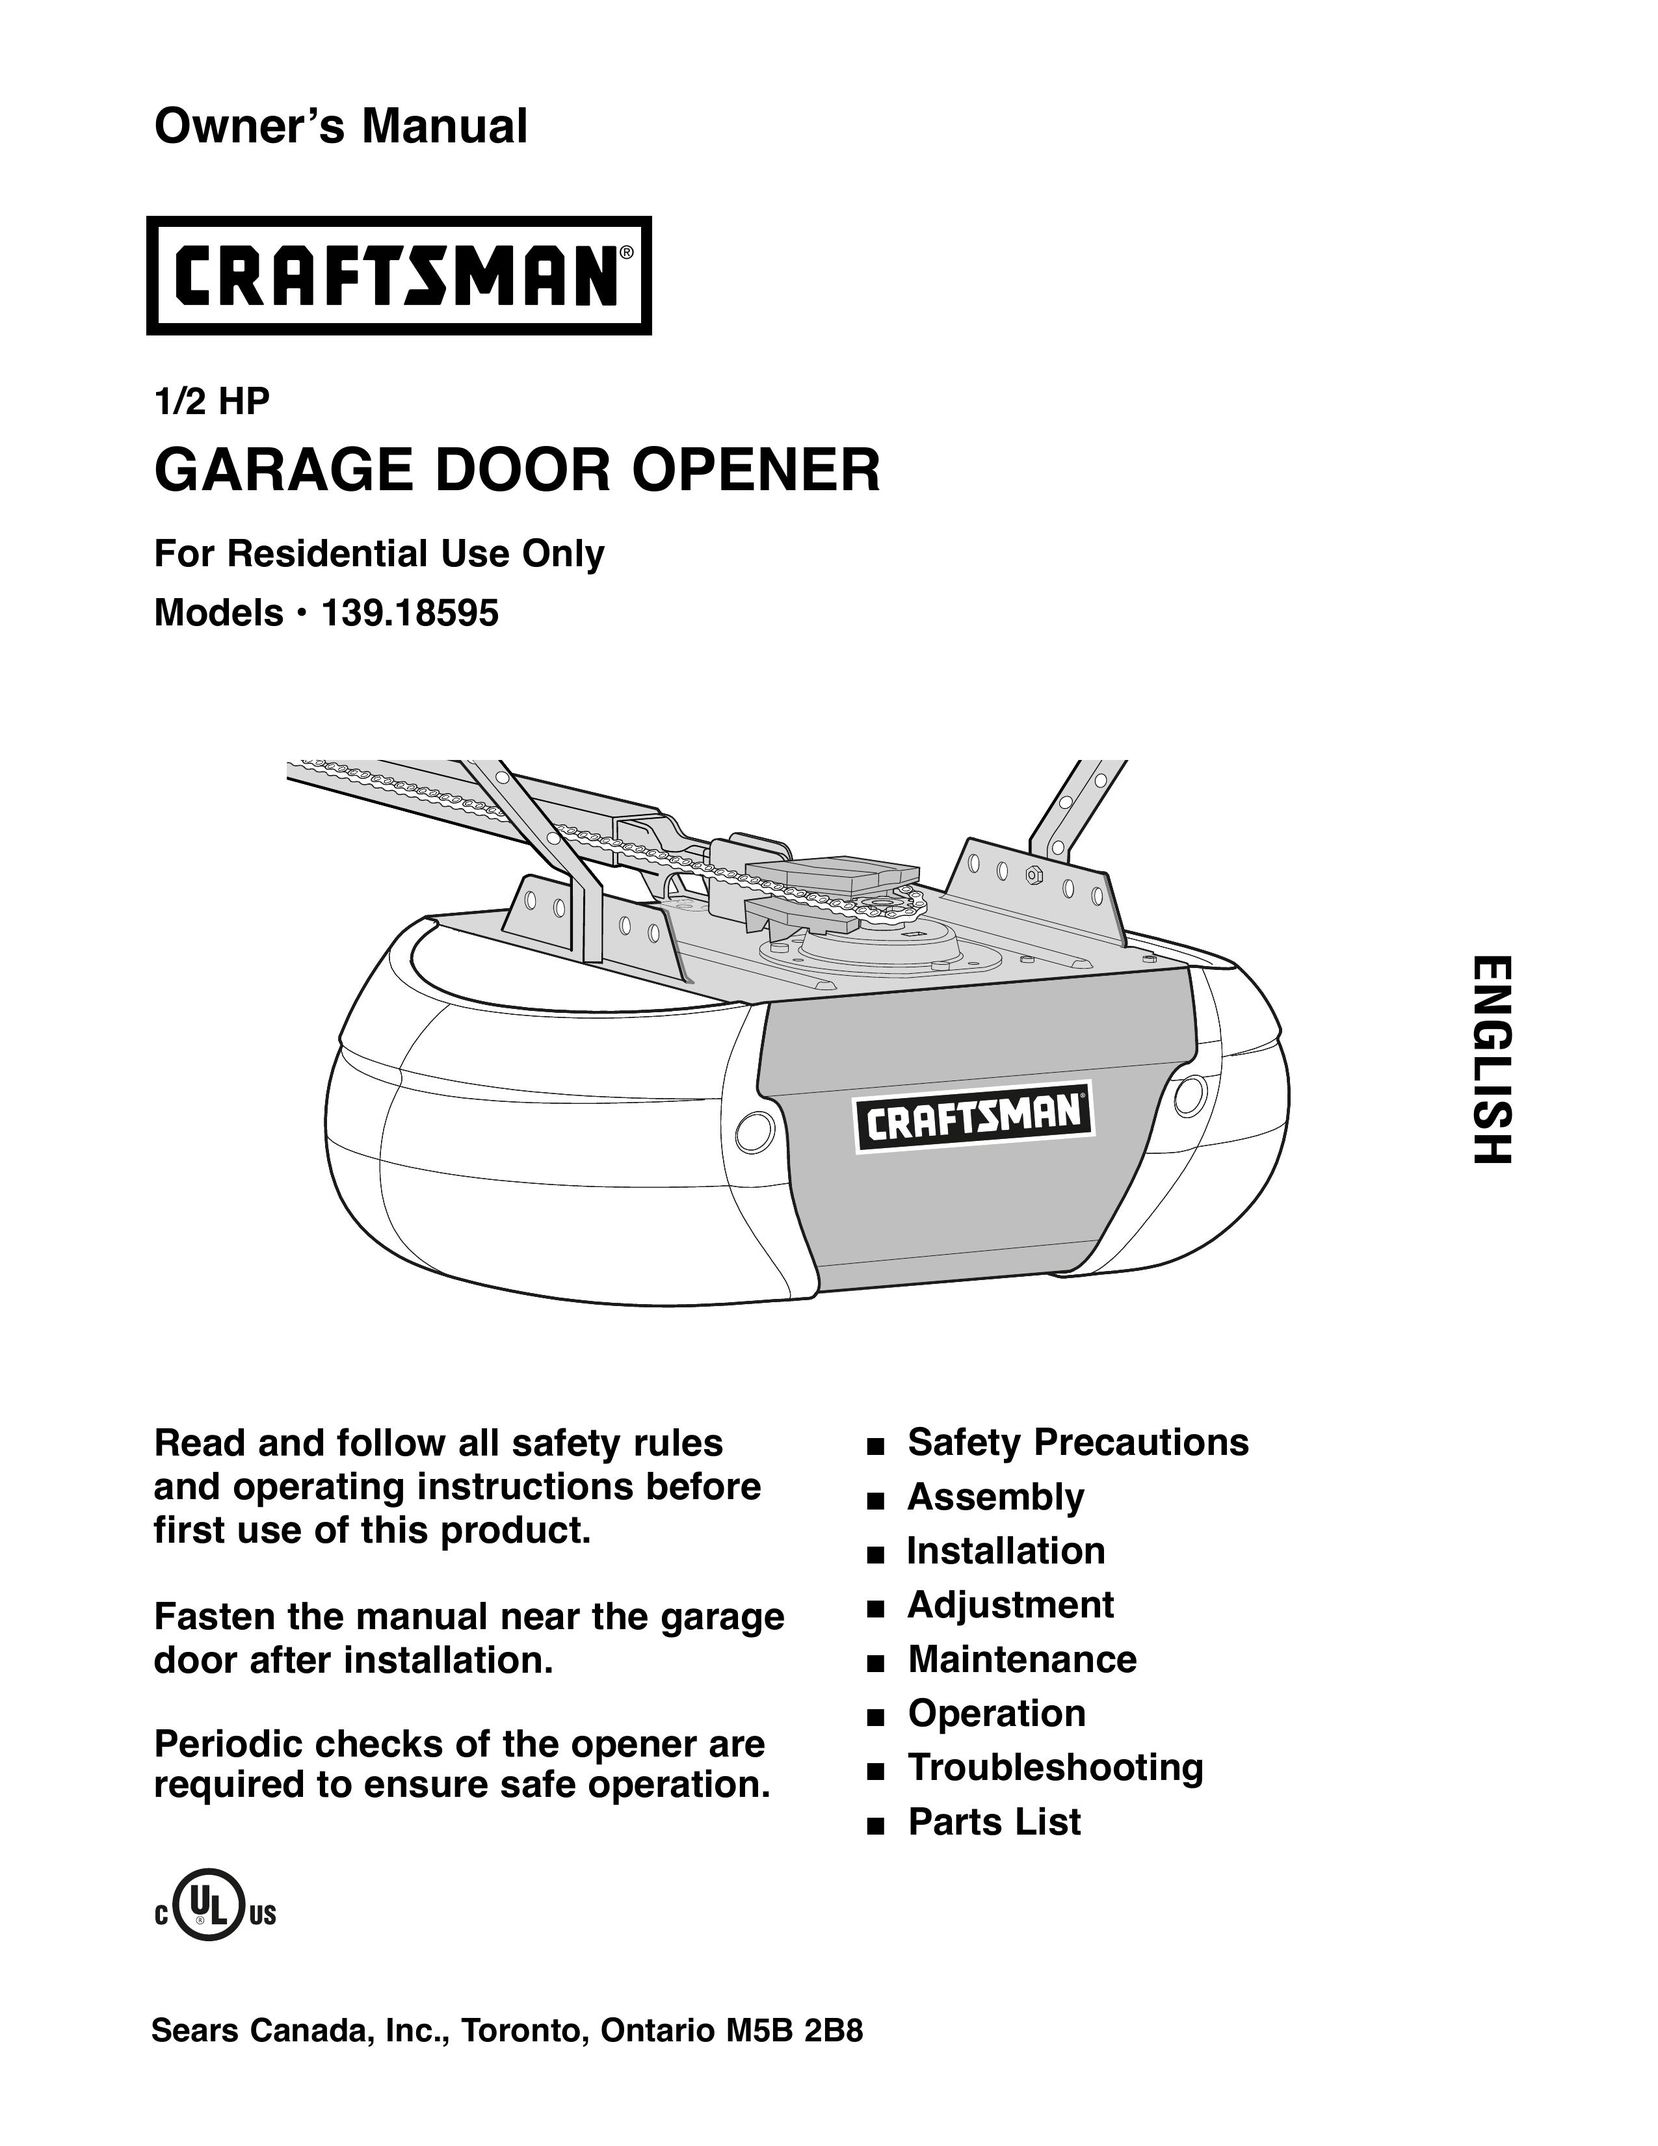 Craftsman 139.18595 Garage Door Opener User Manual